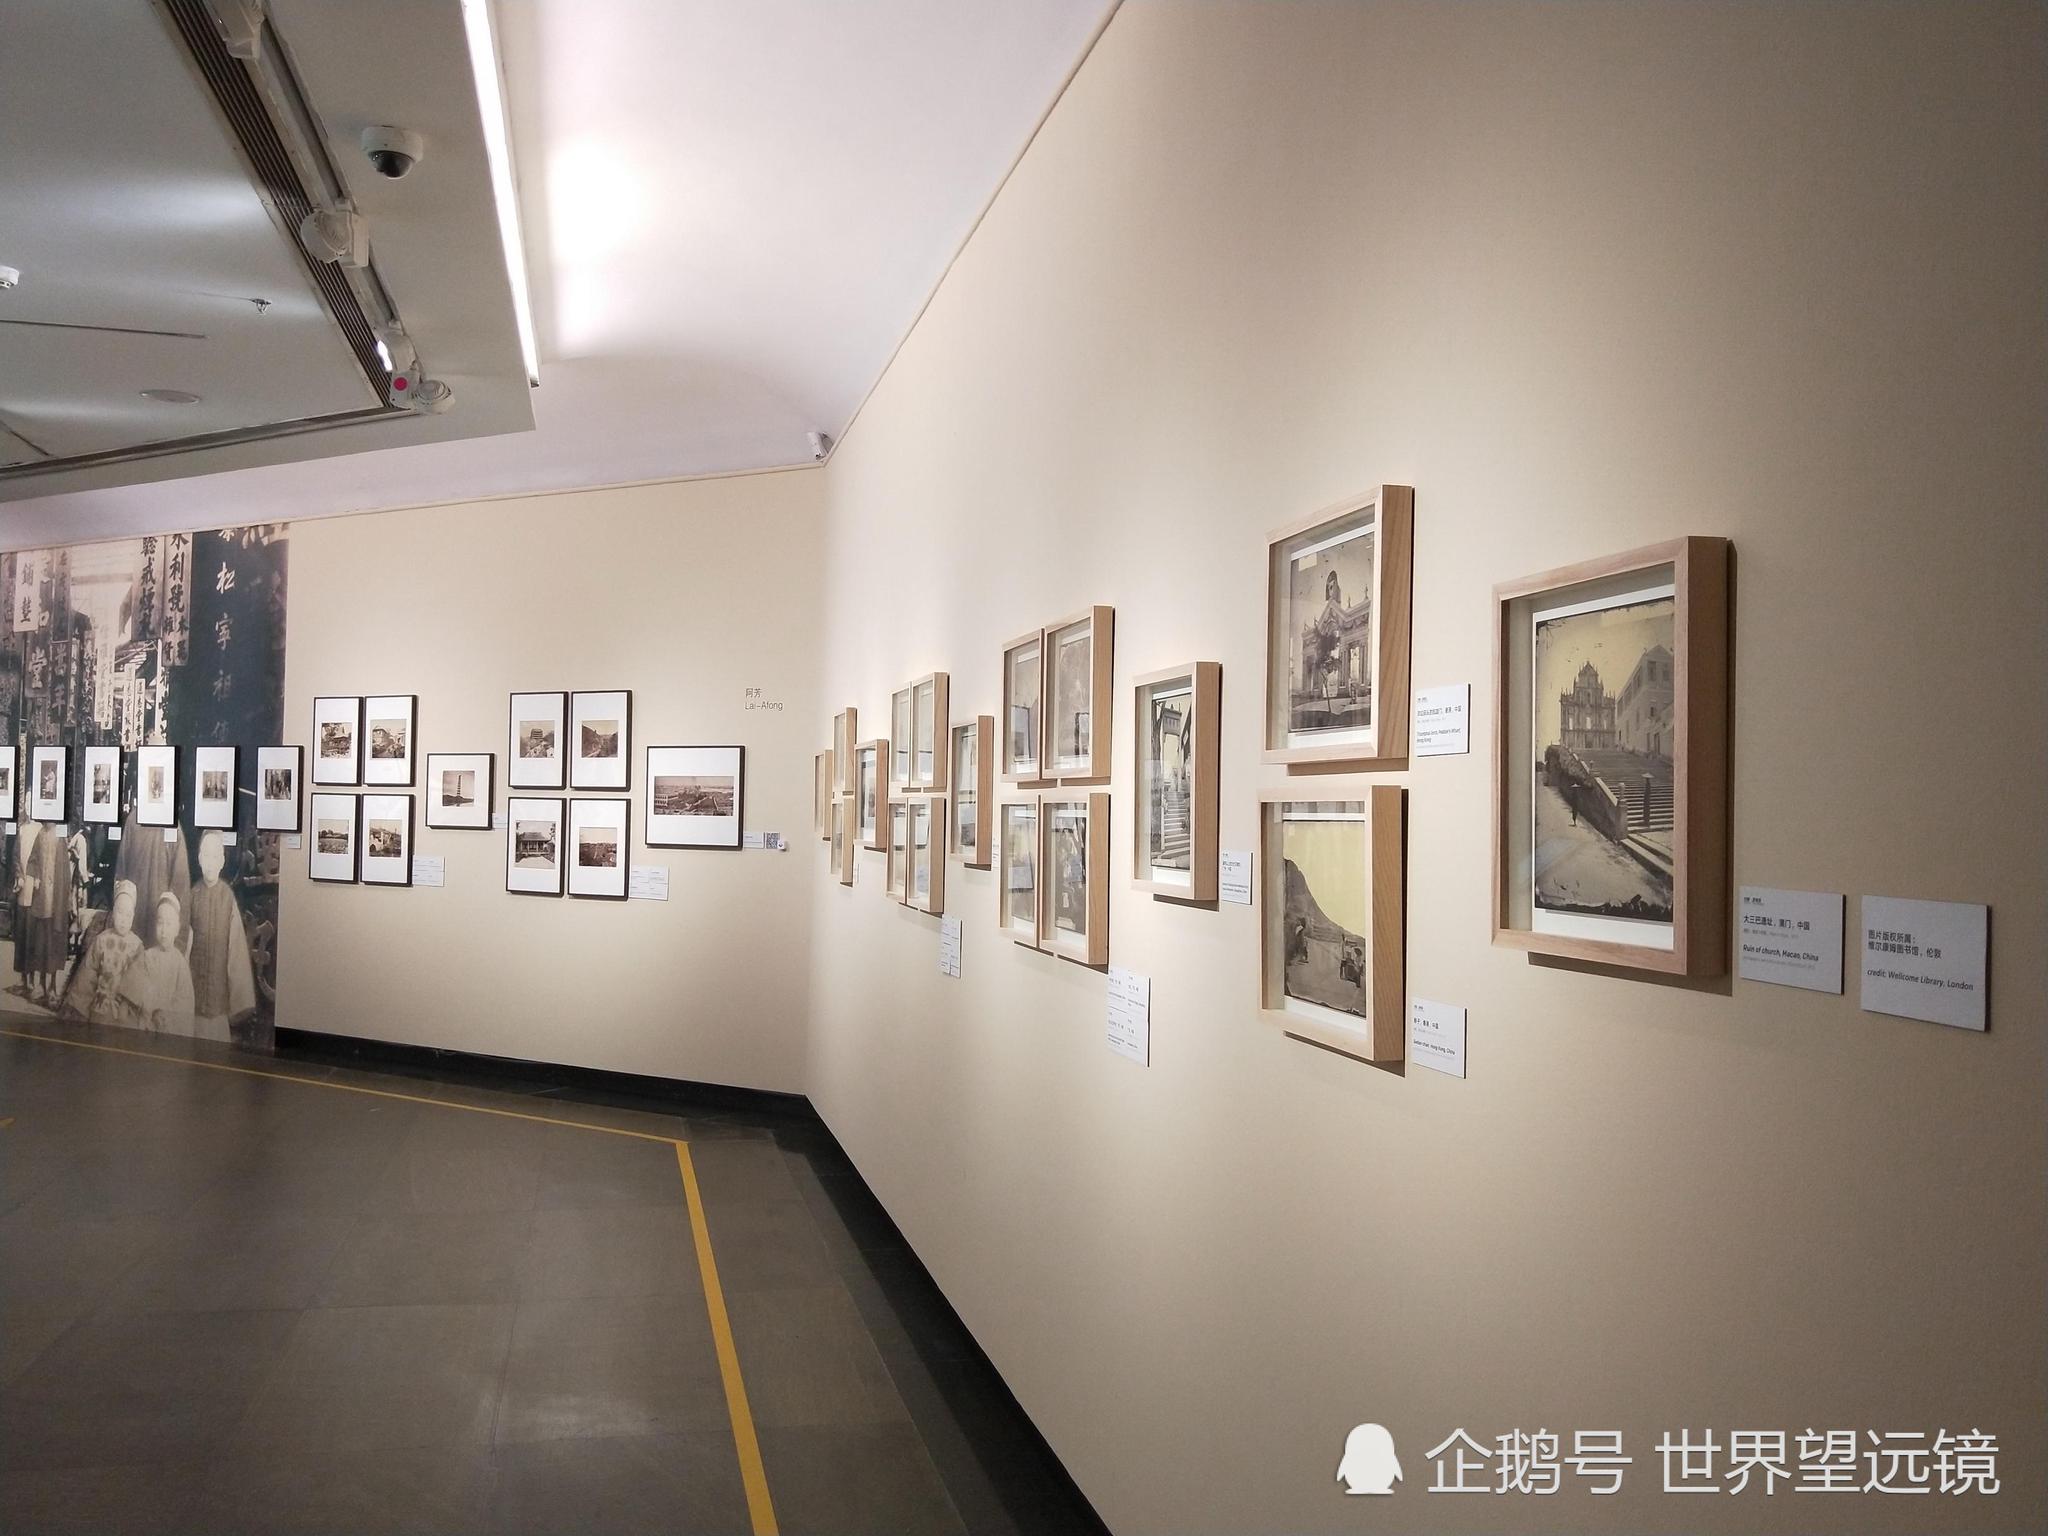 广东美术馆游记:广州二沙岛上的免费艺术馆,艺术气息浓厚